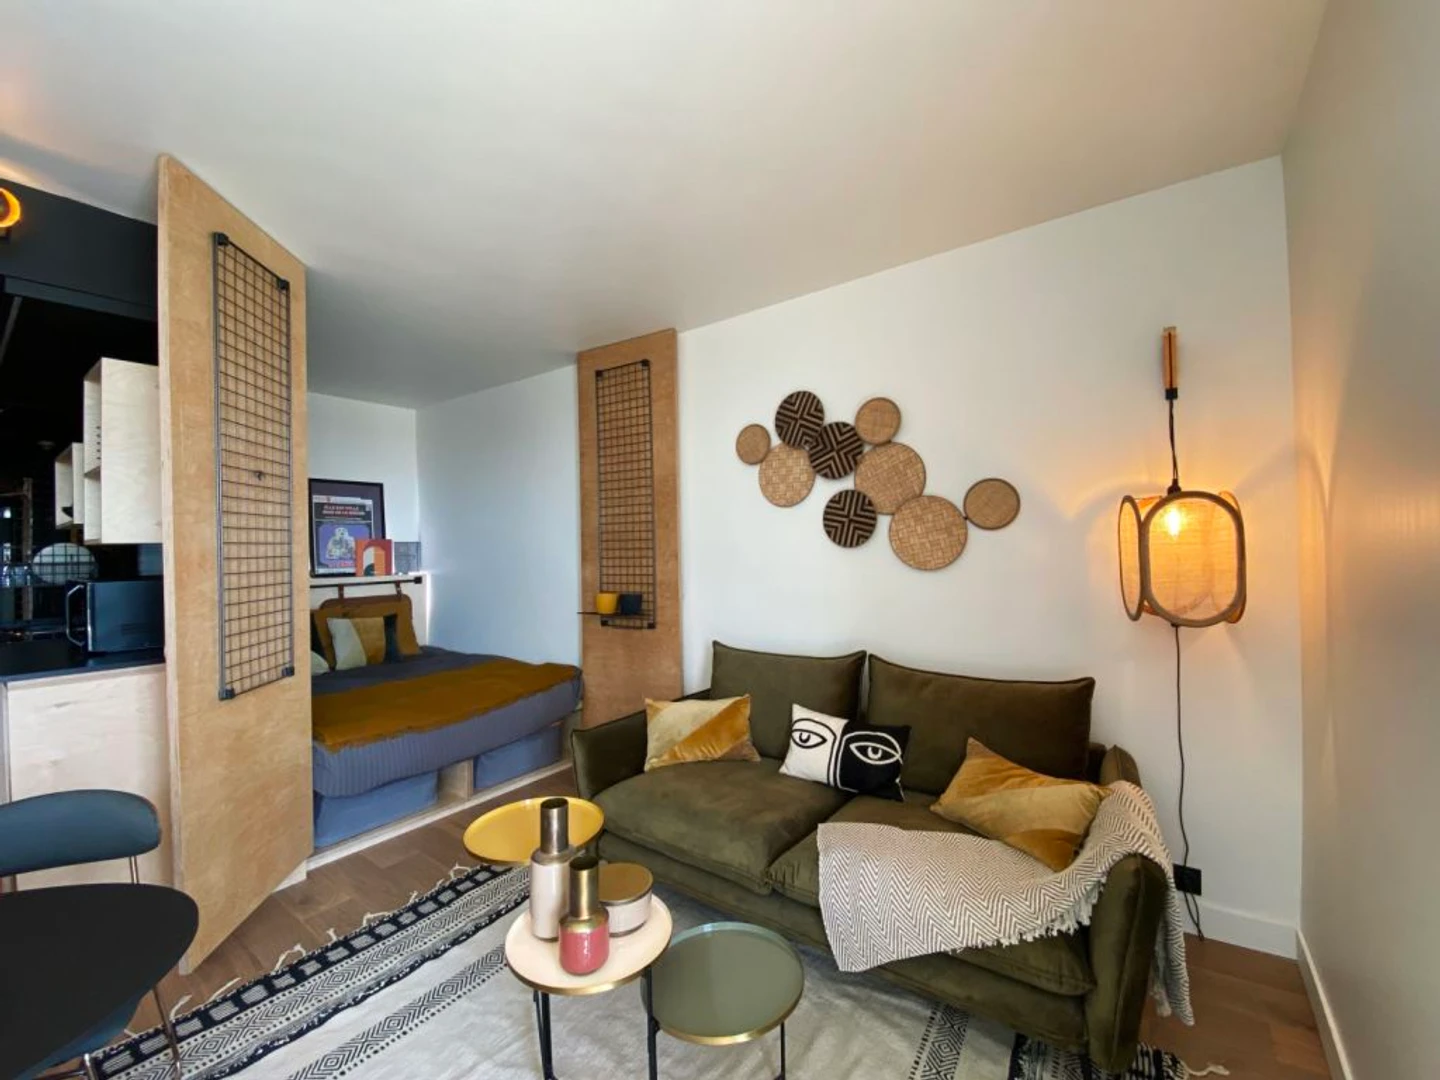 Appartamento completamente ristrutturato a Grenoble